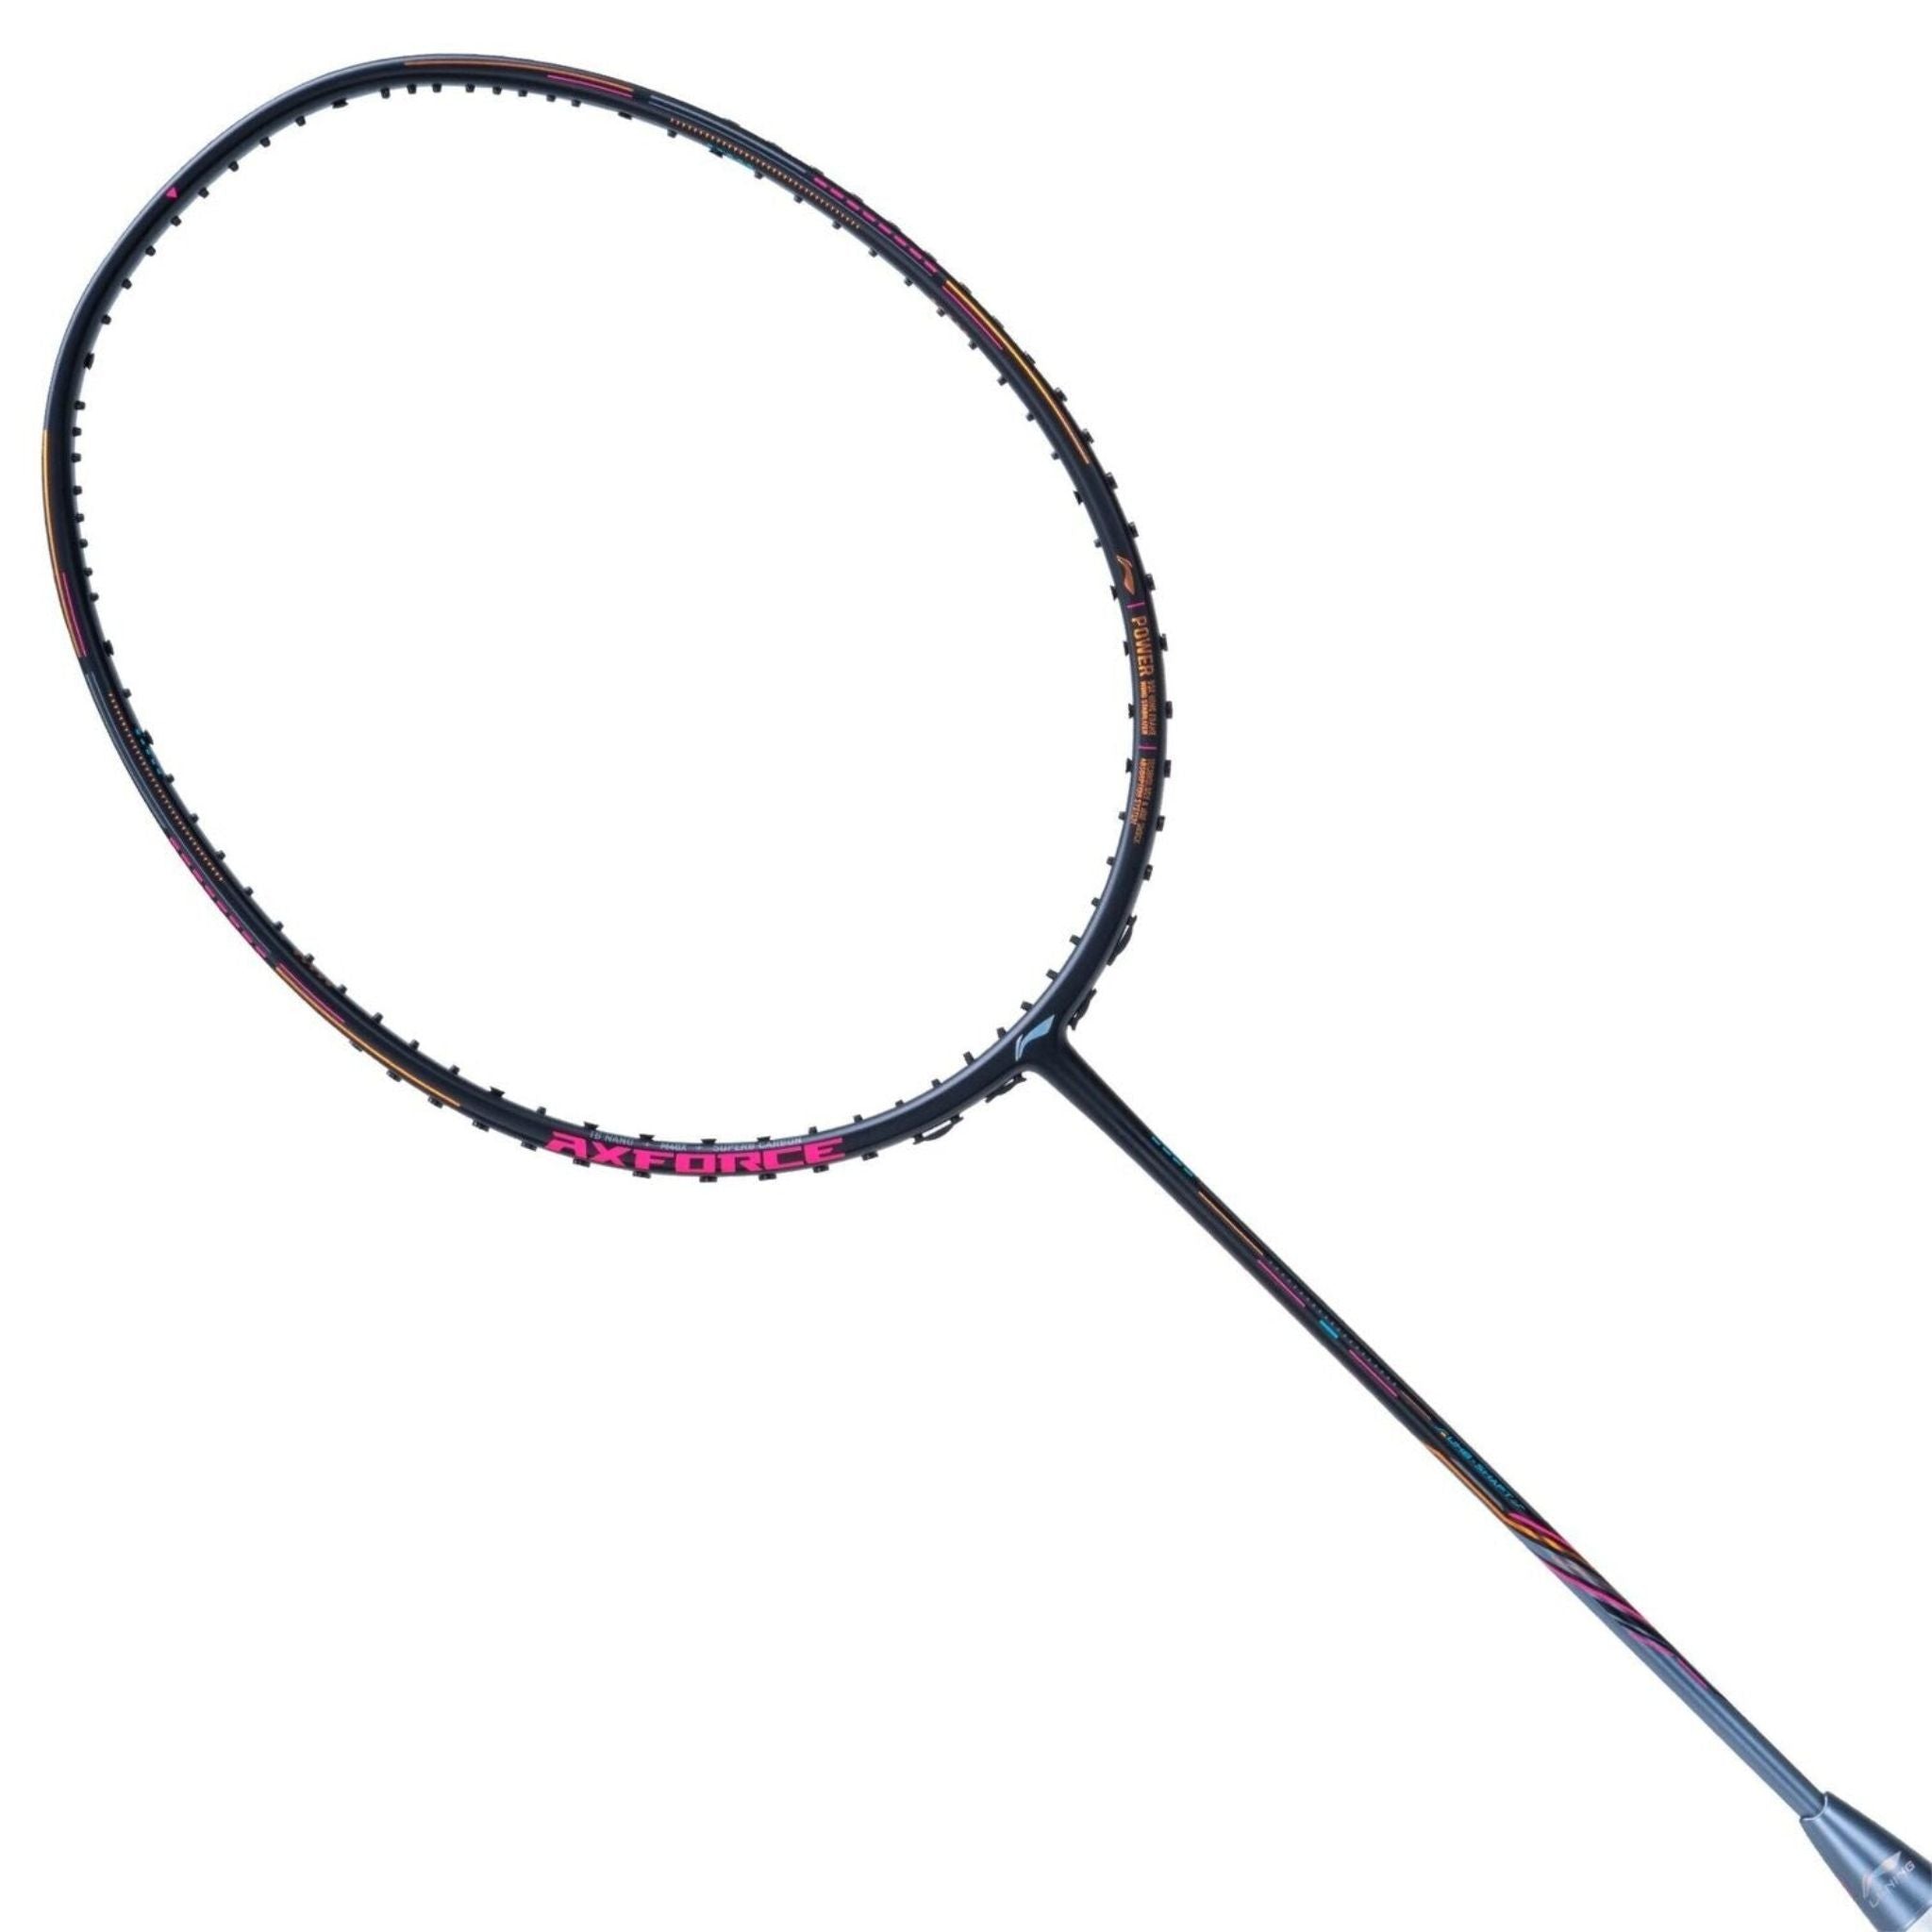 LI-NING AXFORCE 80 4U Badminton Racket